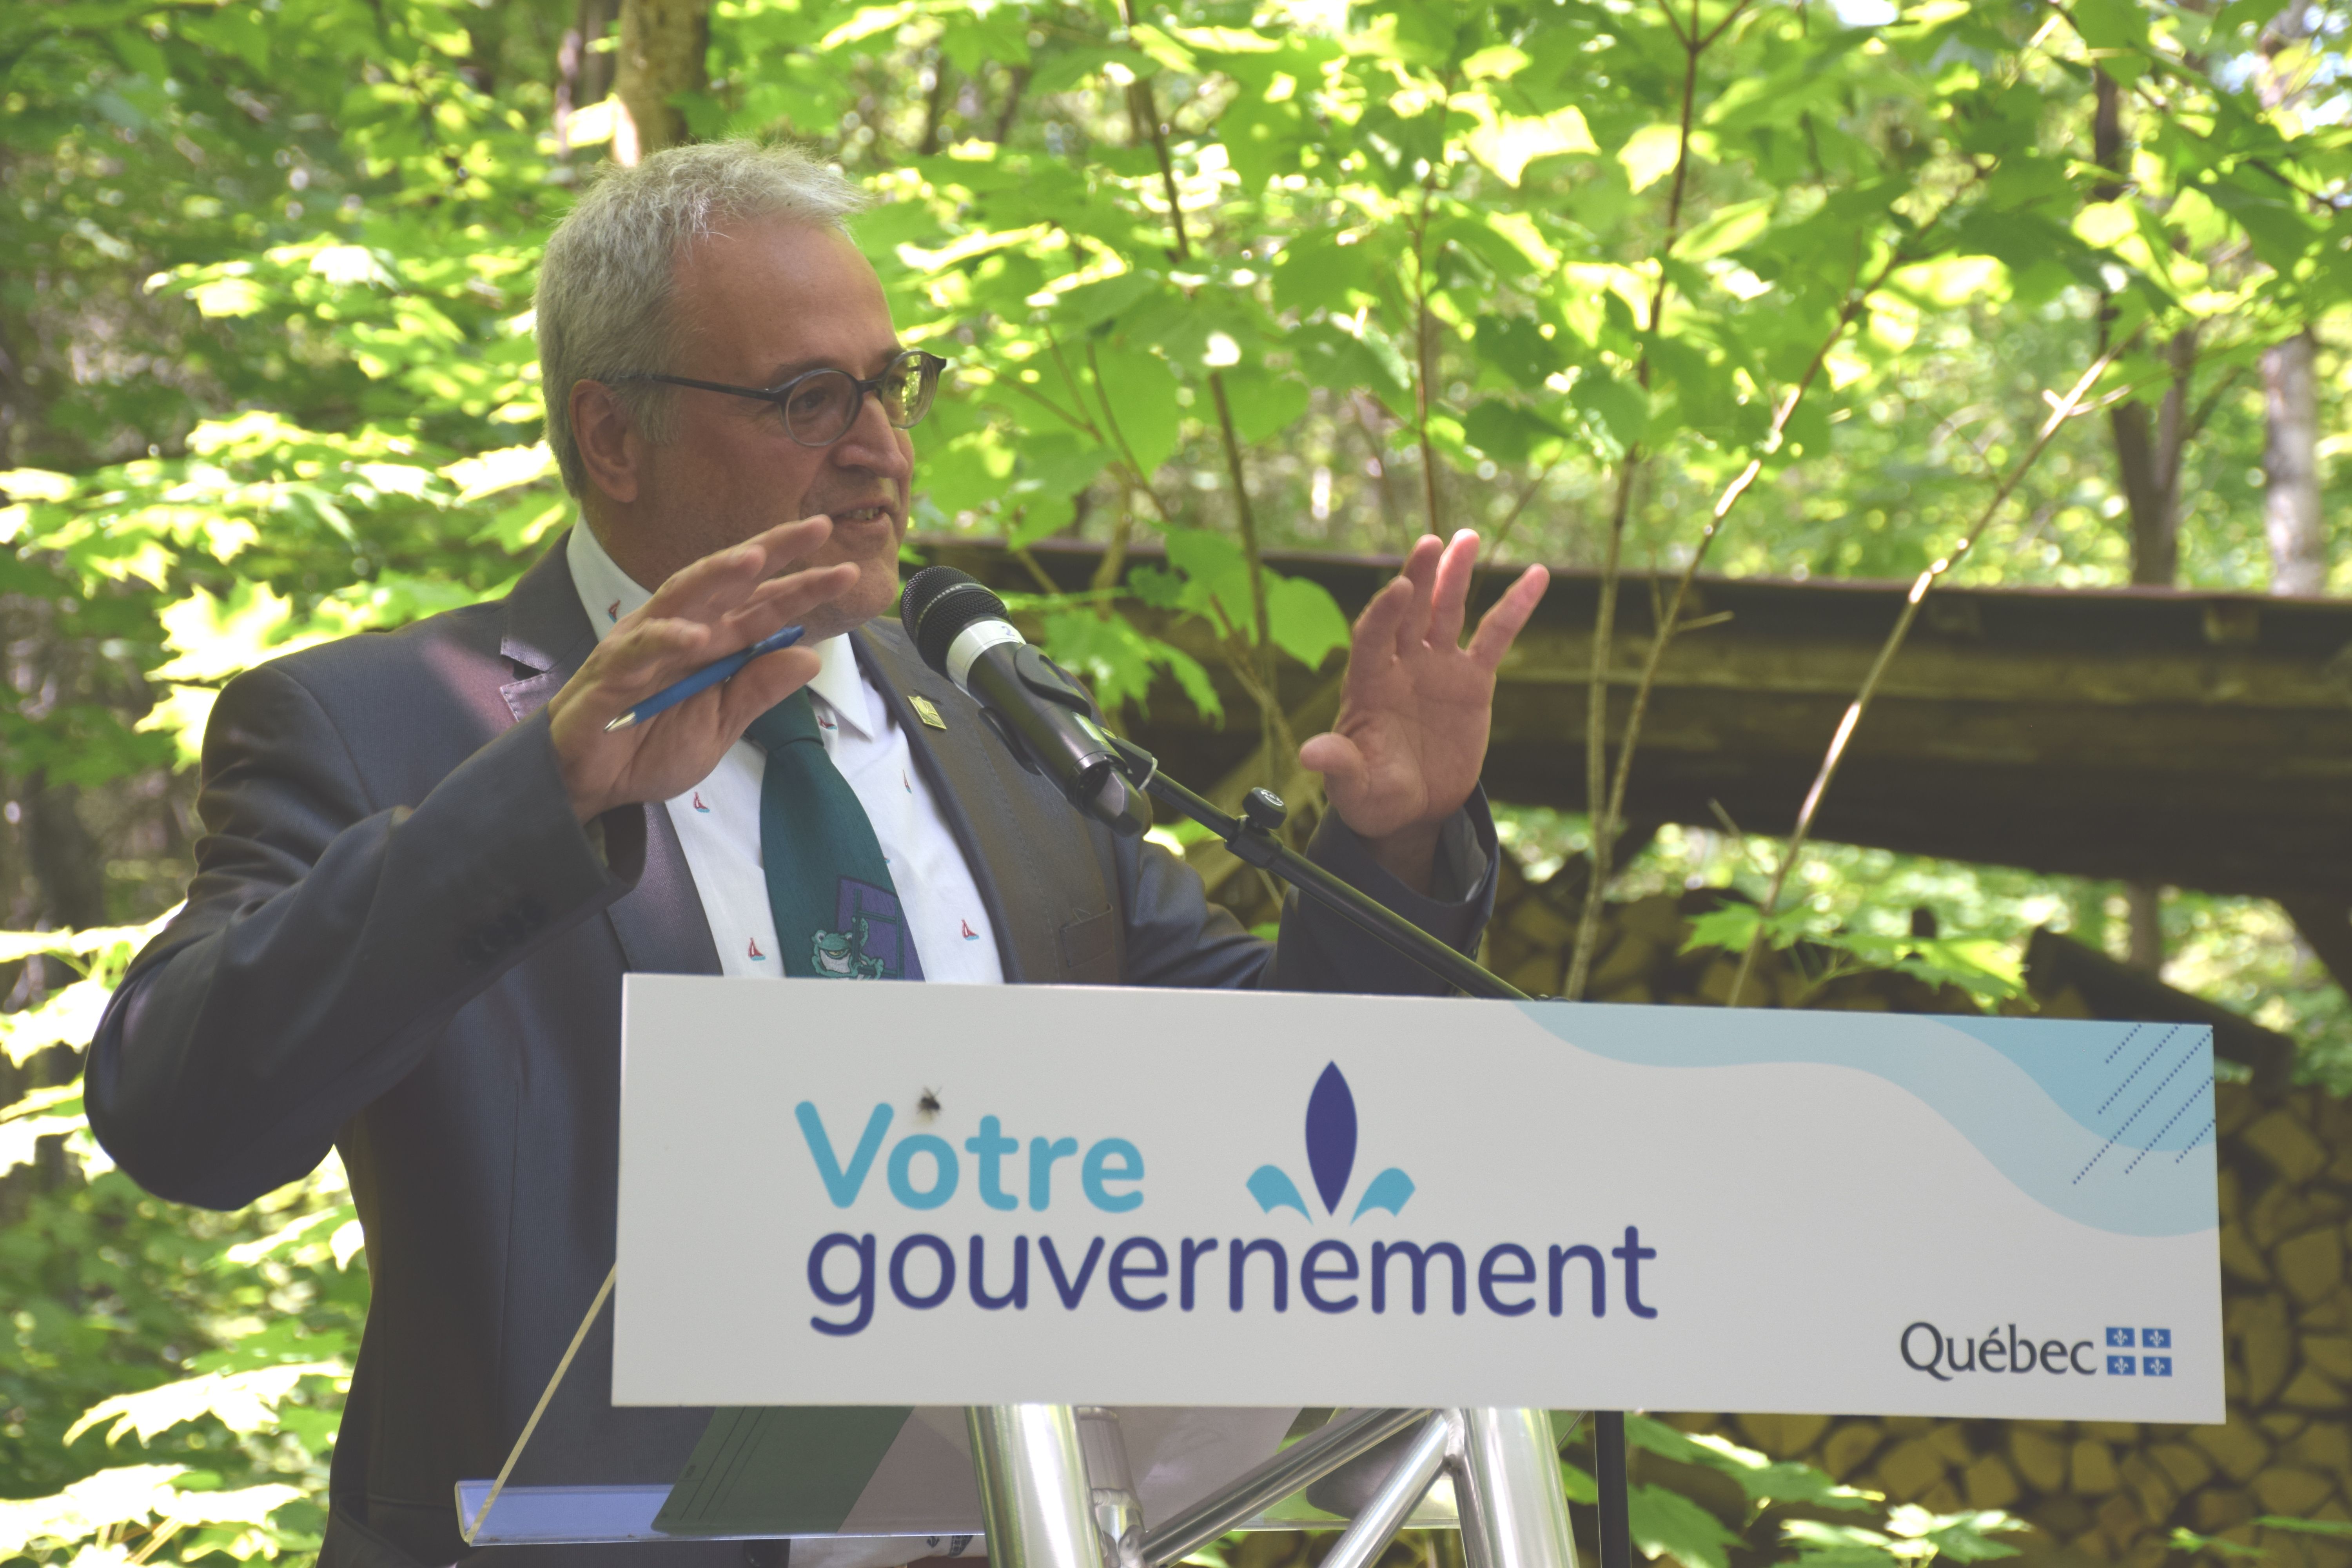 « Les forêts privées du Québec ont un potentiel de croissance annuelle des plus élevés! Ce programme s’inscrit pleinement dans notre action gouvernementale visant à soutenir la création de richesse et d’emplois du secteur forestier tout en assurant la pérennité de la ressource forestière et de ses bénéfices environnementaux. » souligne Pierre Dufour, ministre des Forêts, de la Faune et des Parcs et ministre responsable de la région de l’Abitibi-Témiscamingue et de la région du Nord-du-Québec. : 